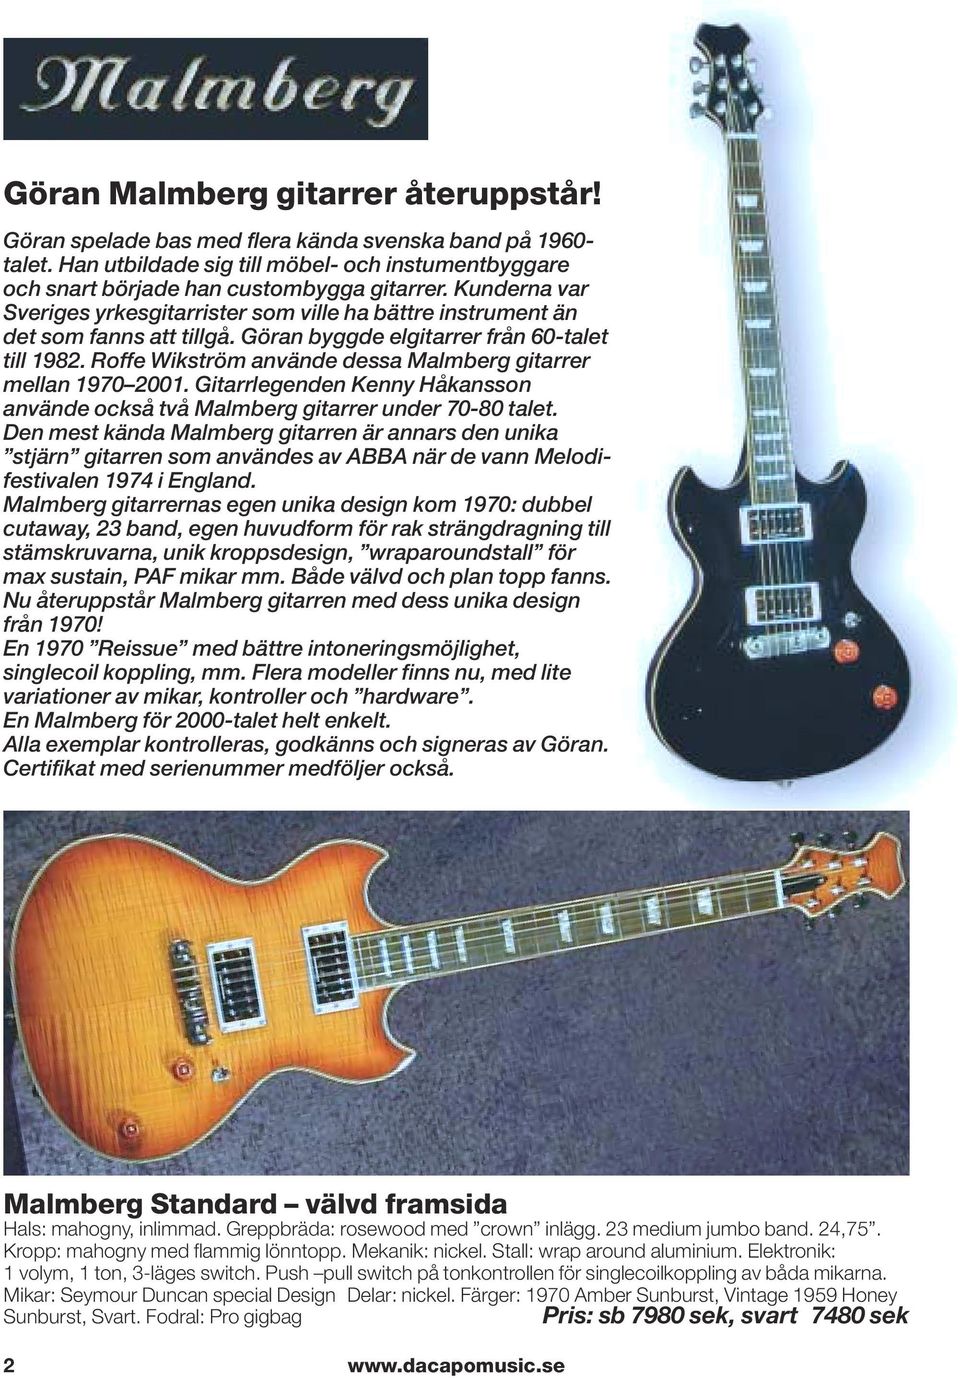 Roffe Wikström använde dessa Malmberg gitarrer mellan 1970 2001. Gitarrlegenden Kenny Håkansson använde också två Malmberg gitarrer under 70-80 talet.